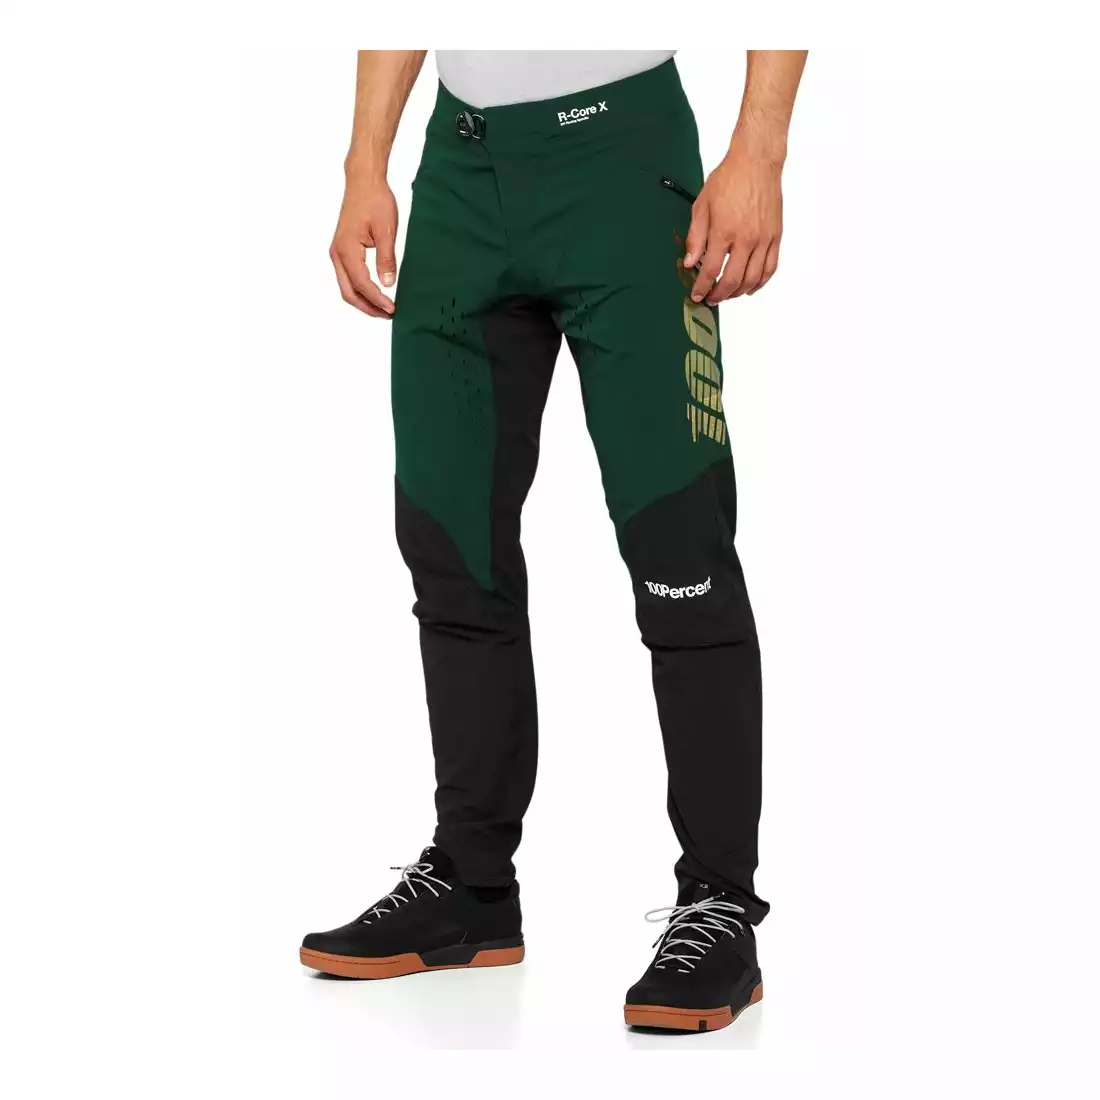 100% R-CORE X Spodnie rowerowe męskie Limited Edition, zielono-czarne